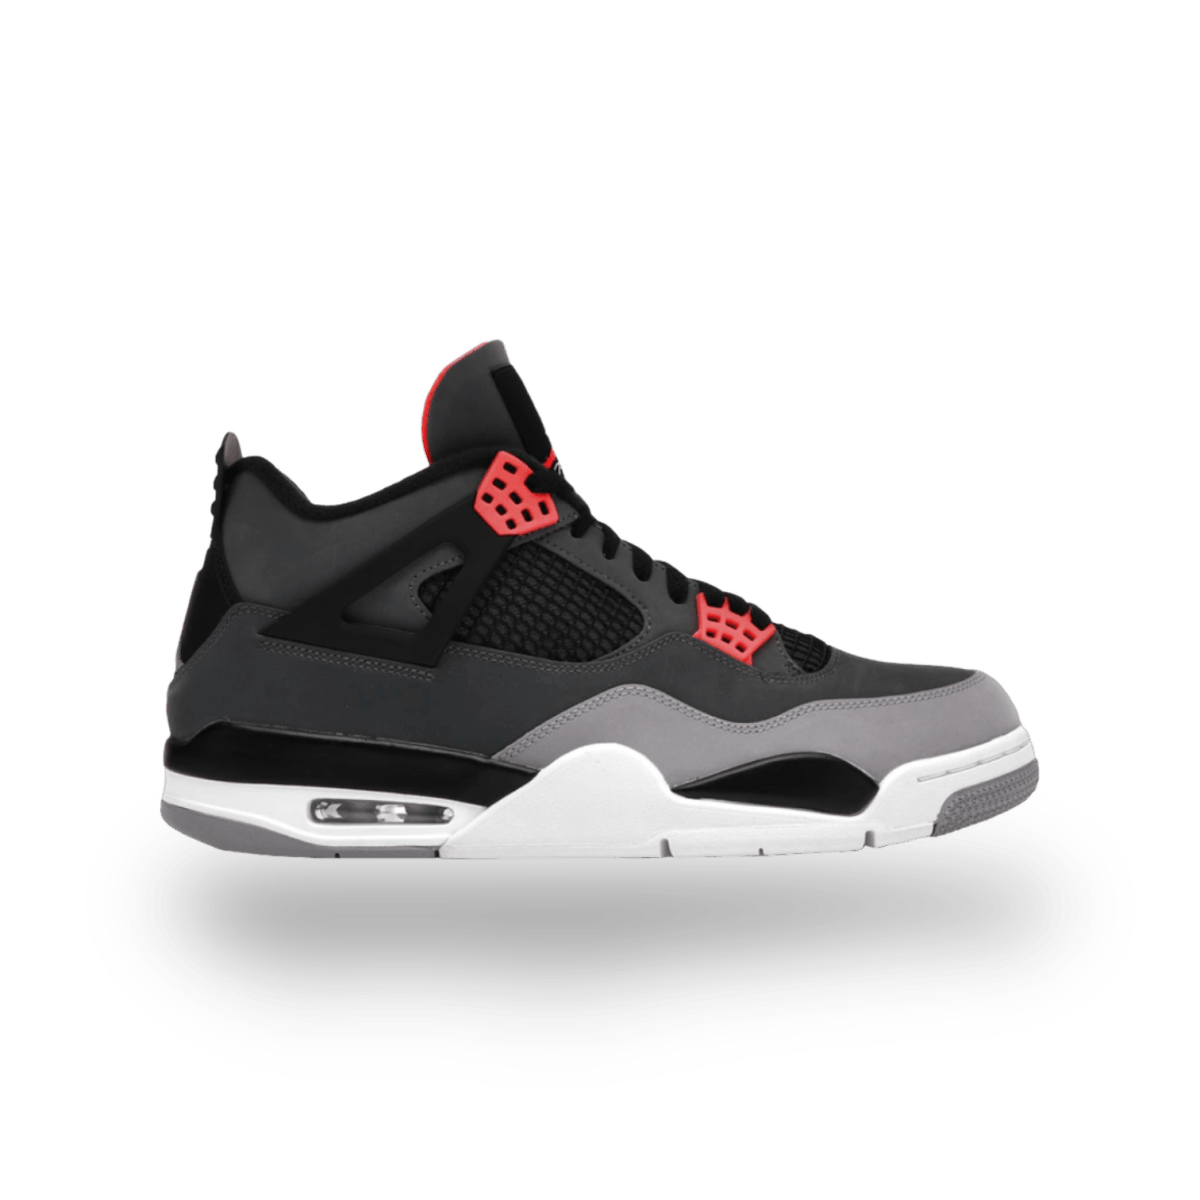 Jordan 4 Retro Infrared - Grade School - sneaker - Mid Sneaker - Jordan - Jawns on Fire